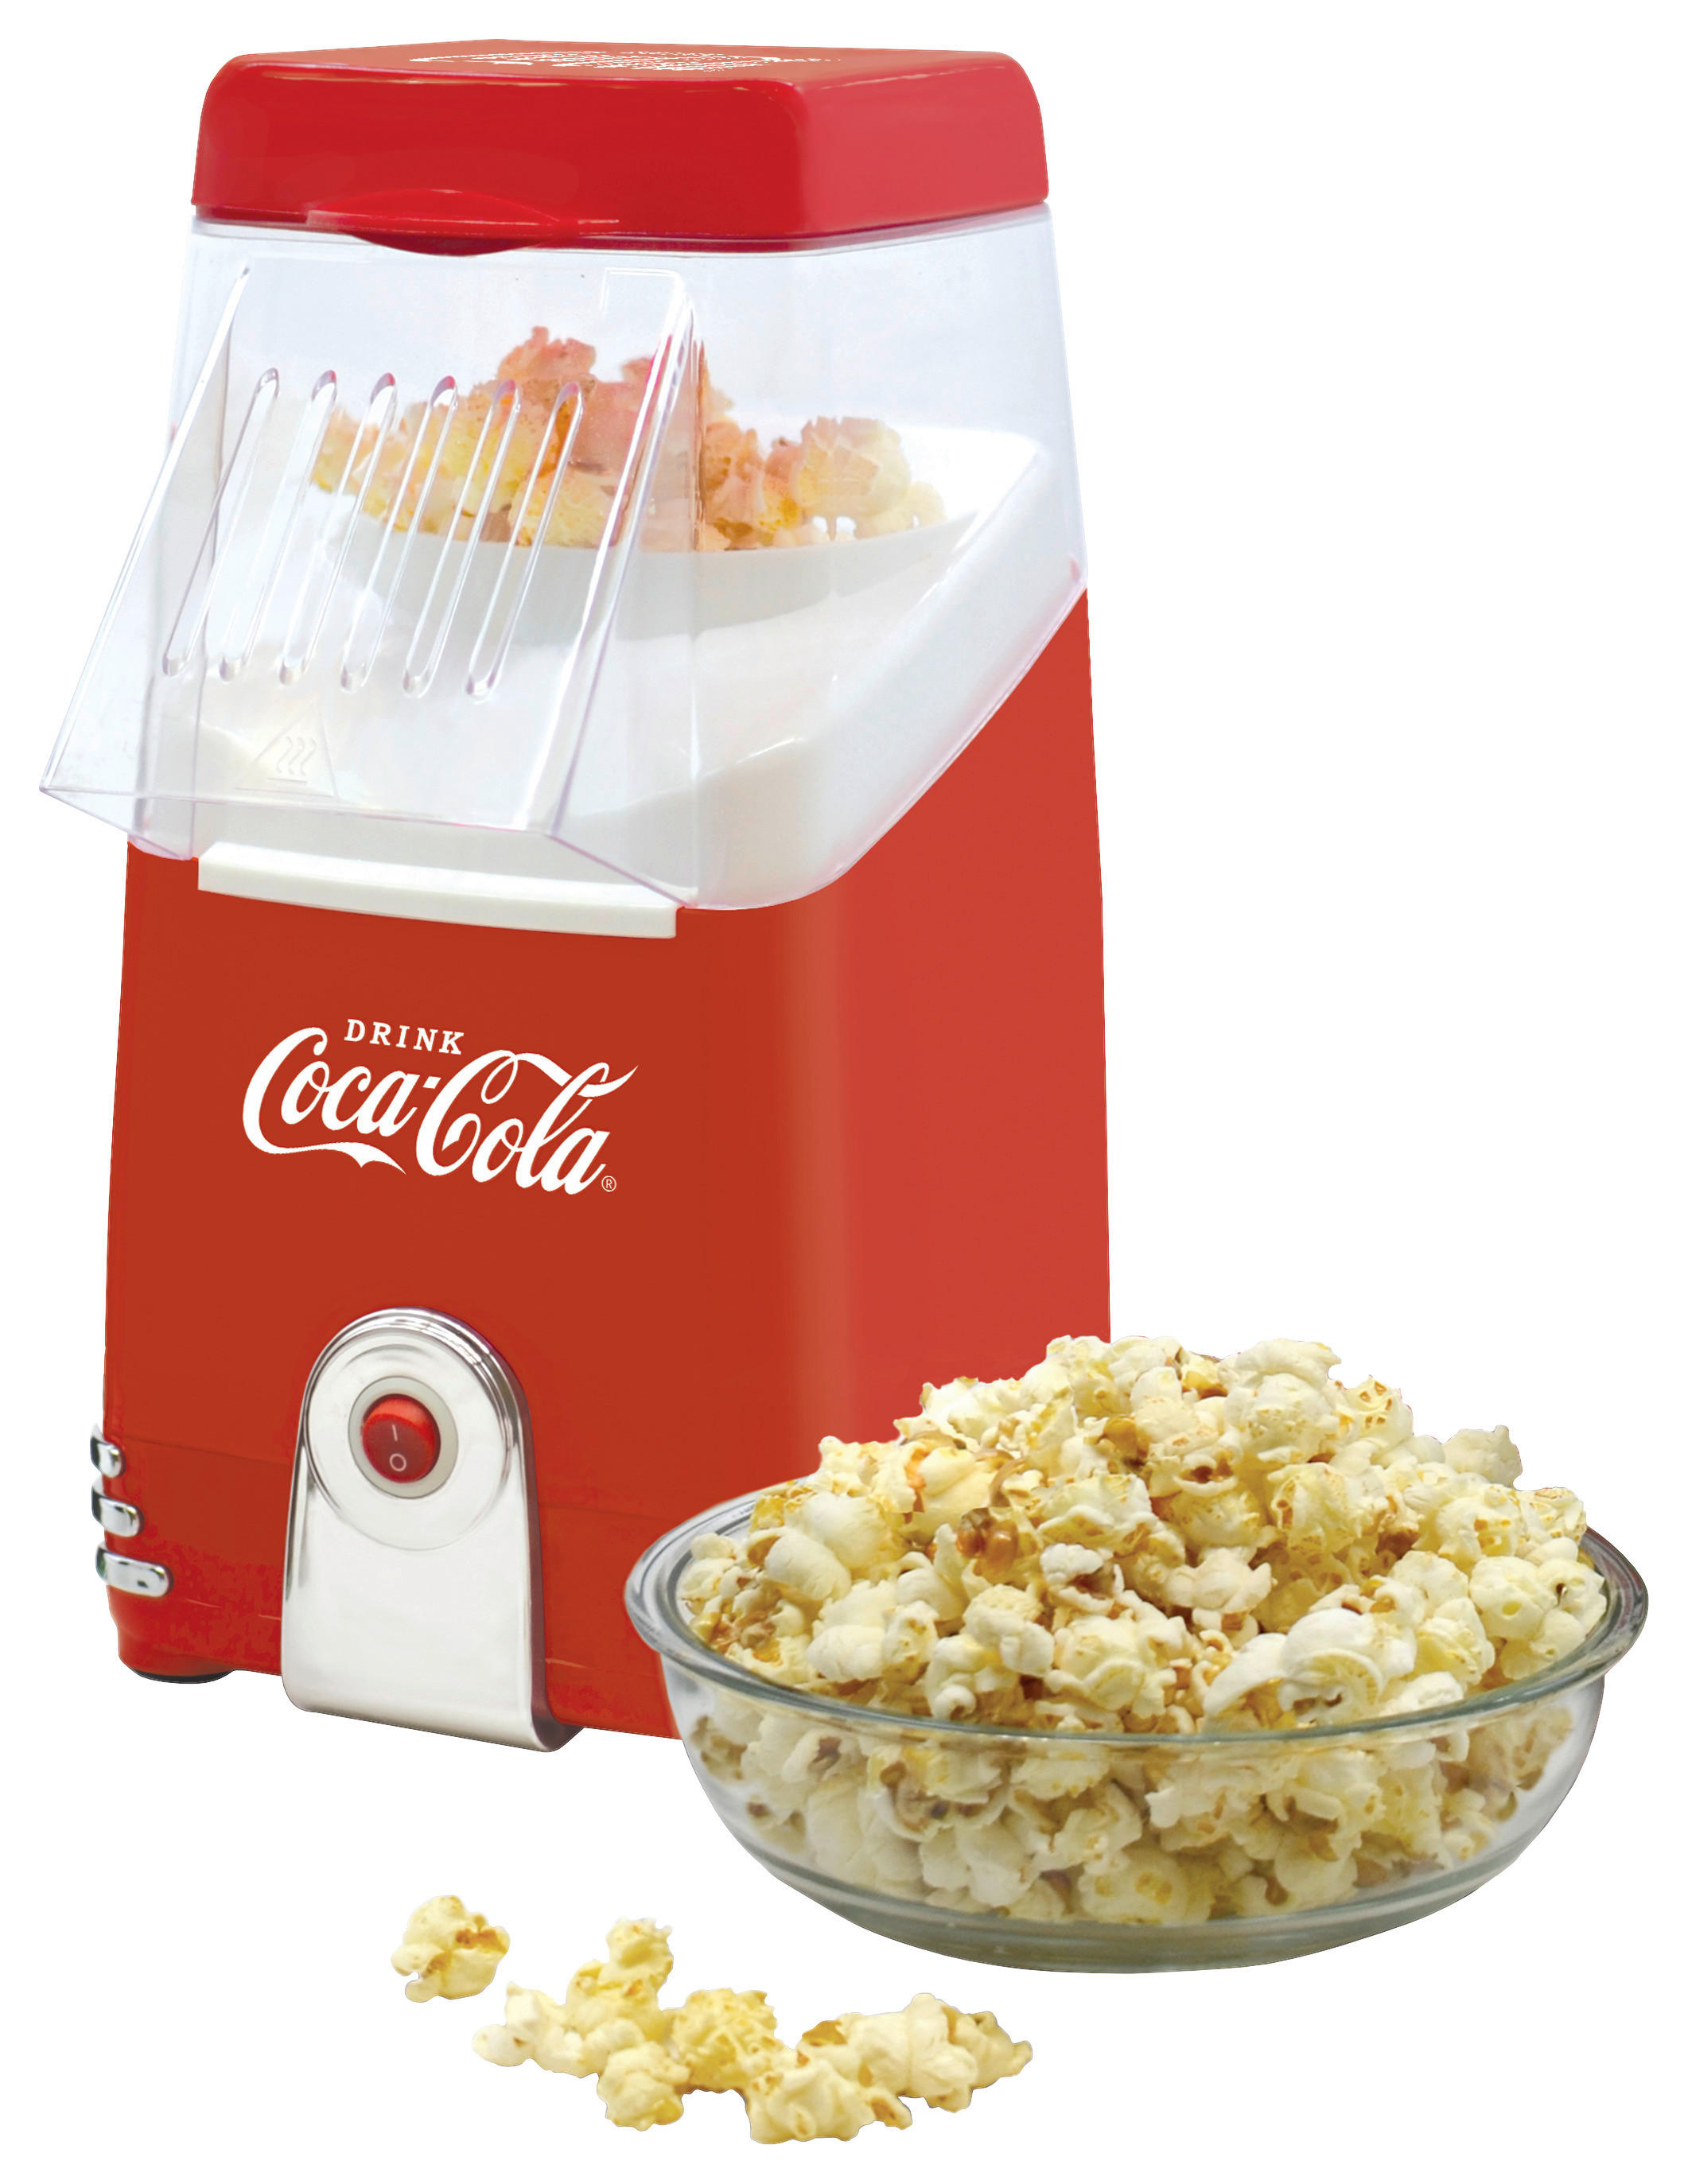 entdecken in Heißluft-Popcornmaschine Rot